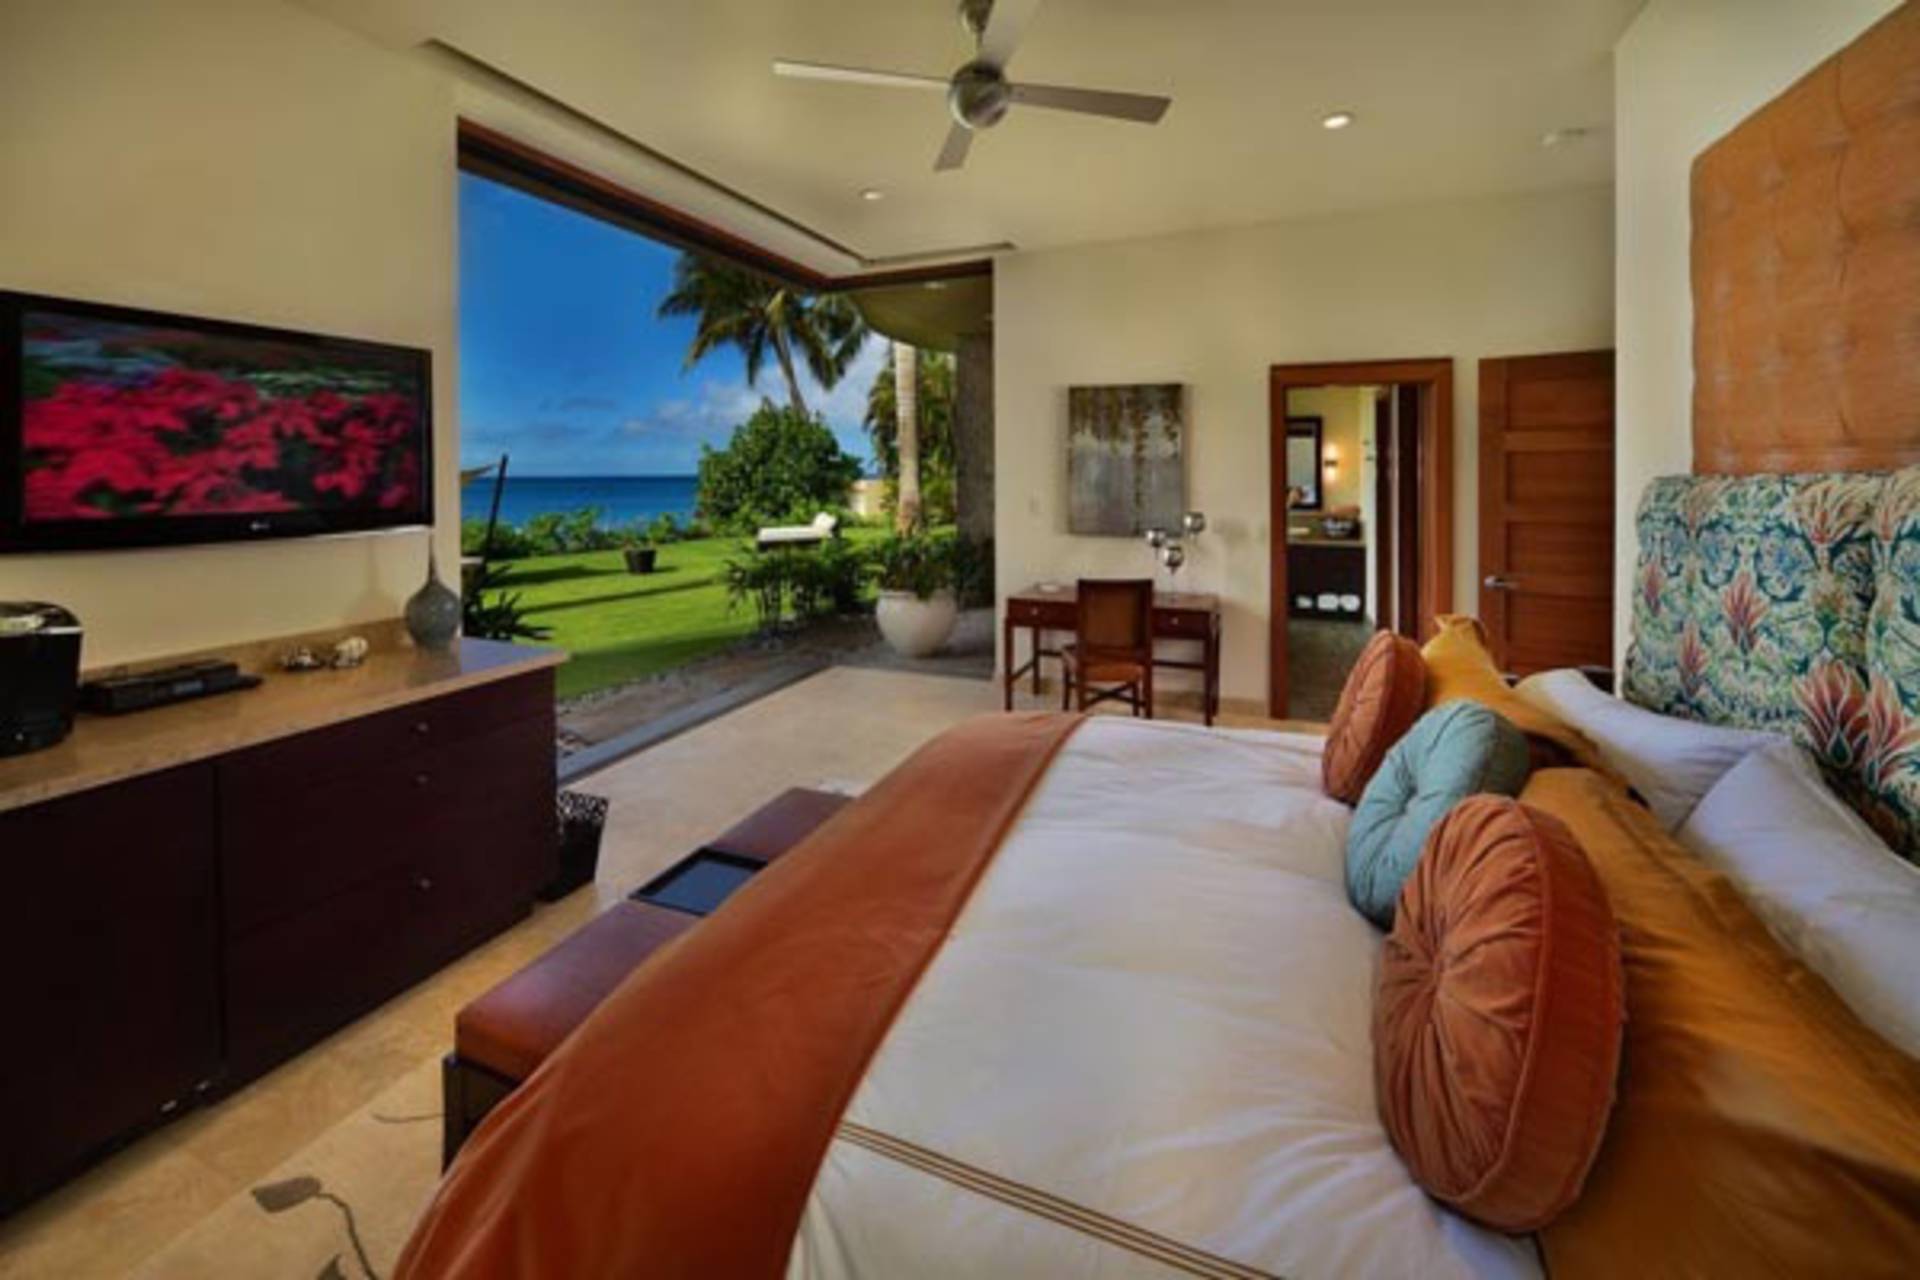 This is nice room. Вилла Гавайи Мауи. Гавайи интерьер. Гавайский стиль в интерьере. Комната в гавайском стиле.